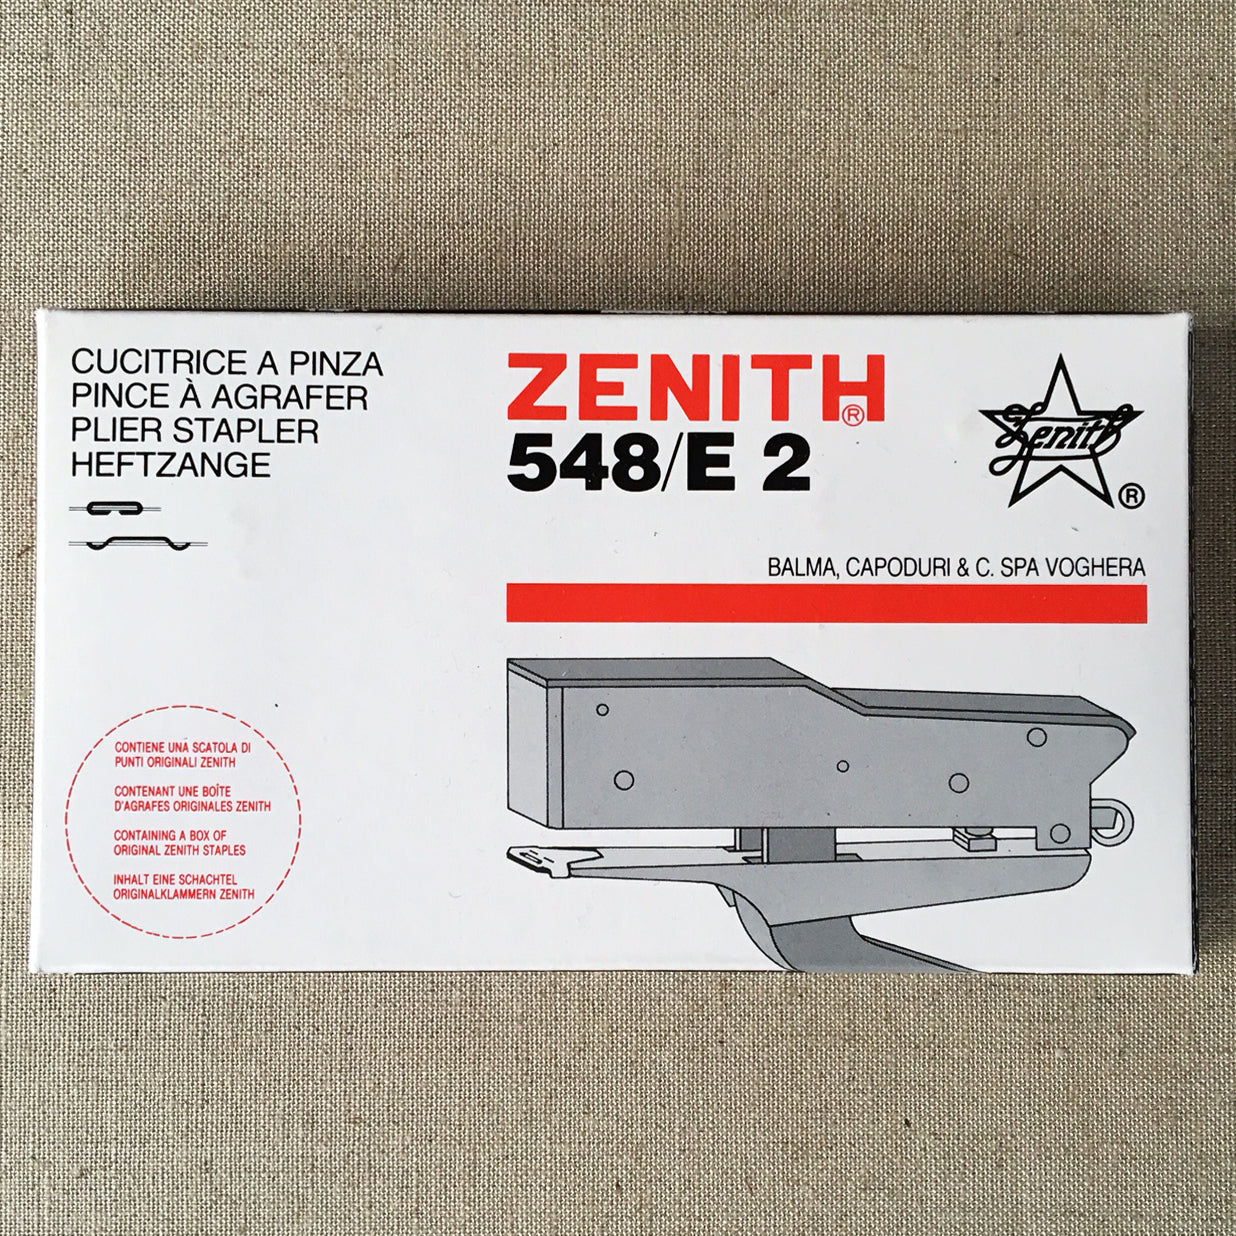 Zenith 548/E 2 Plier Stapler- "Aluminum"